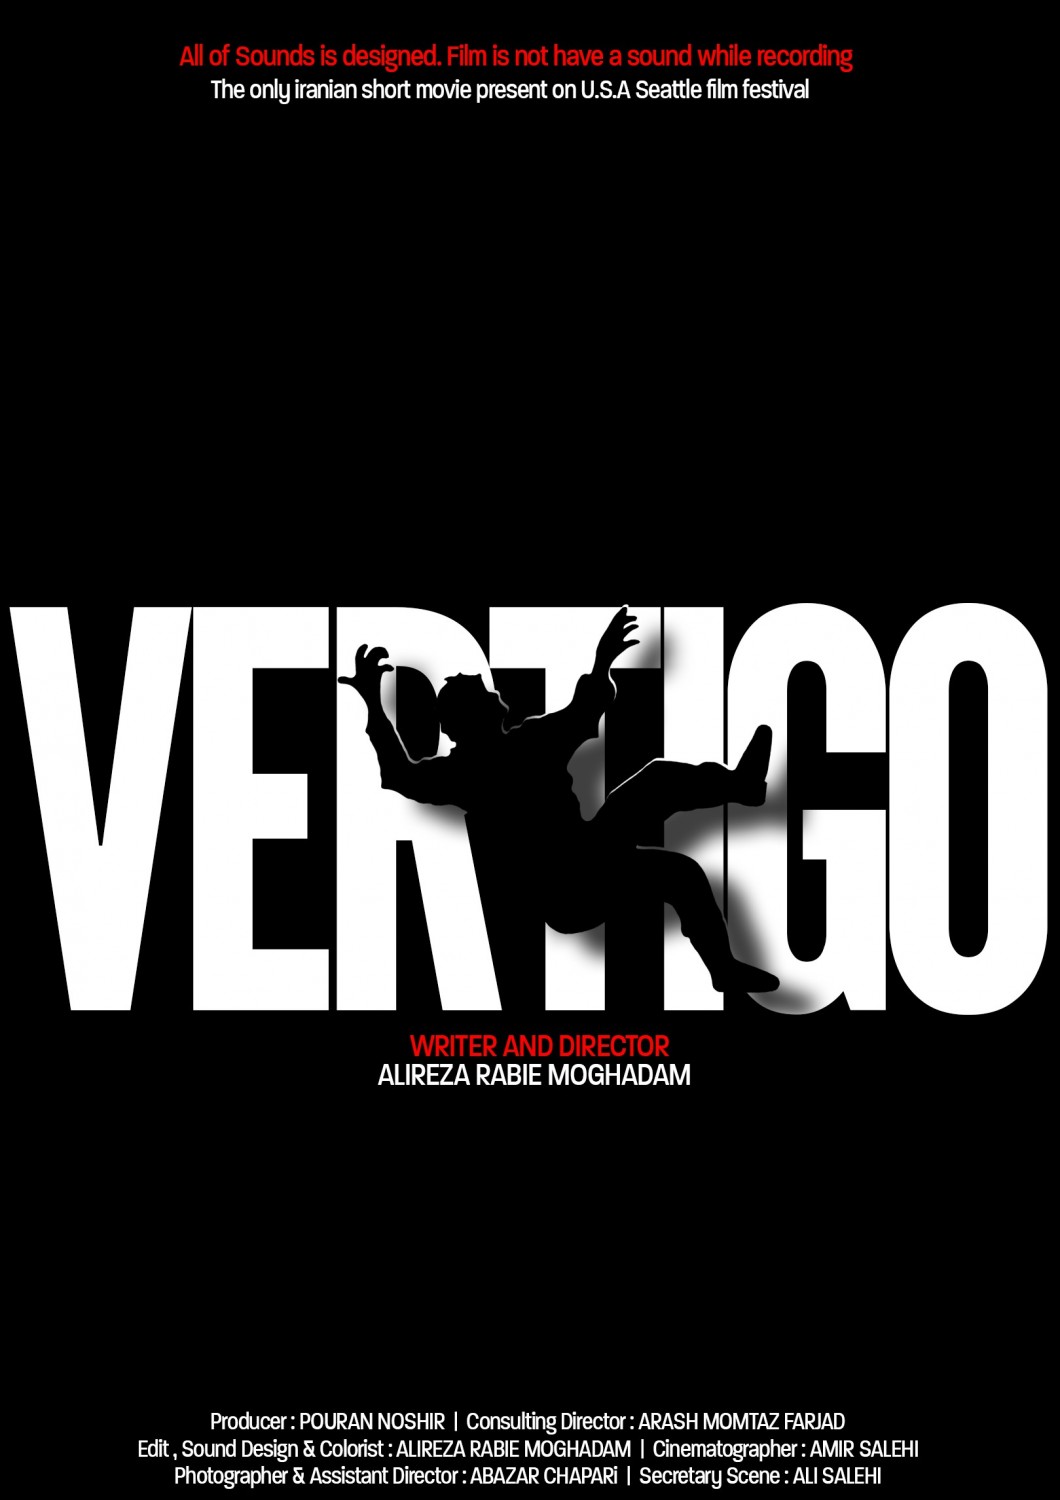 Extra Large Movie Poster Image for Vertigo